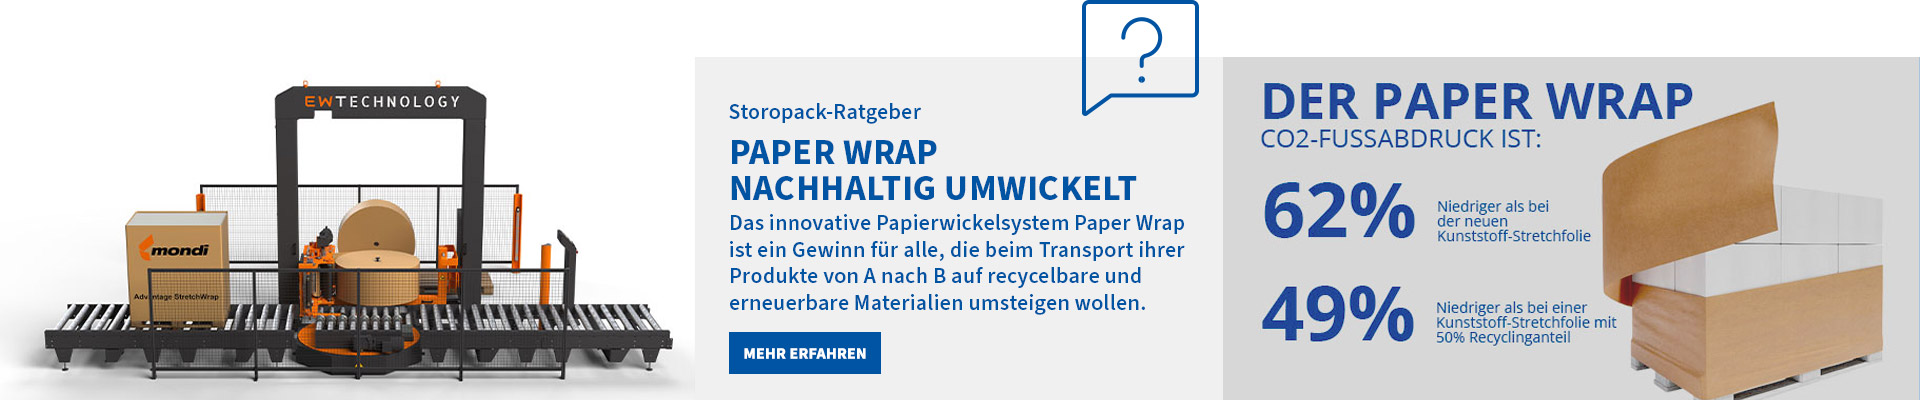 PaperWrap